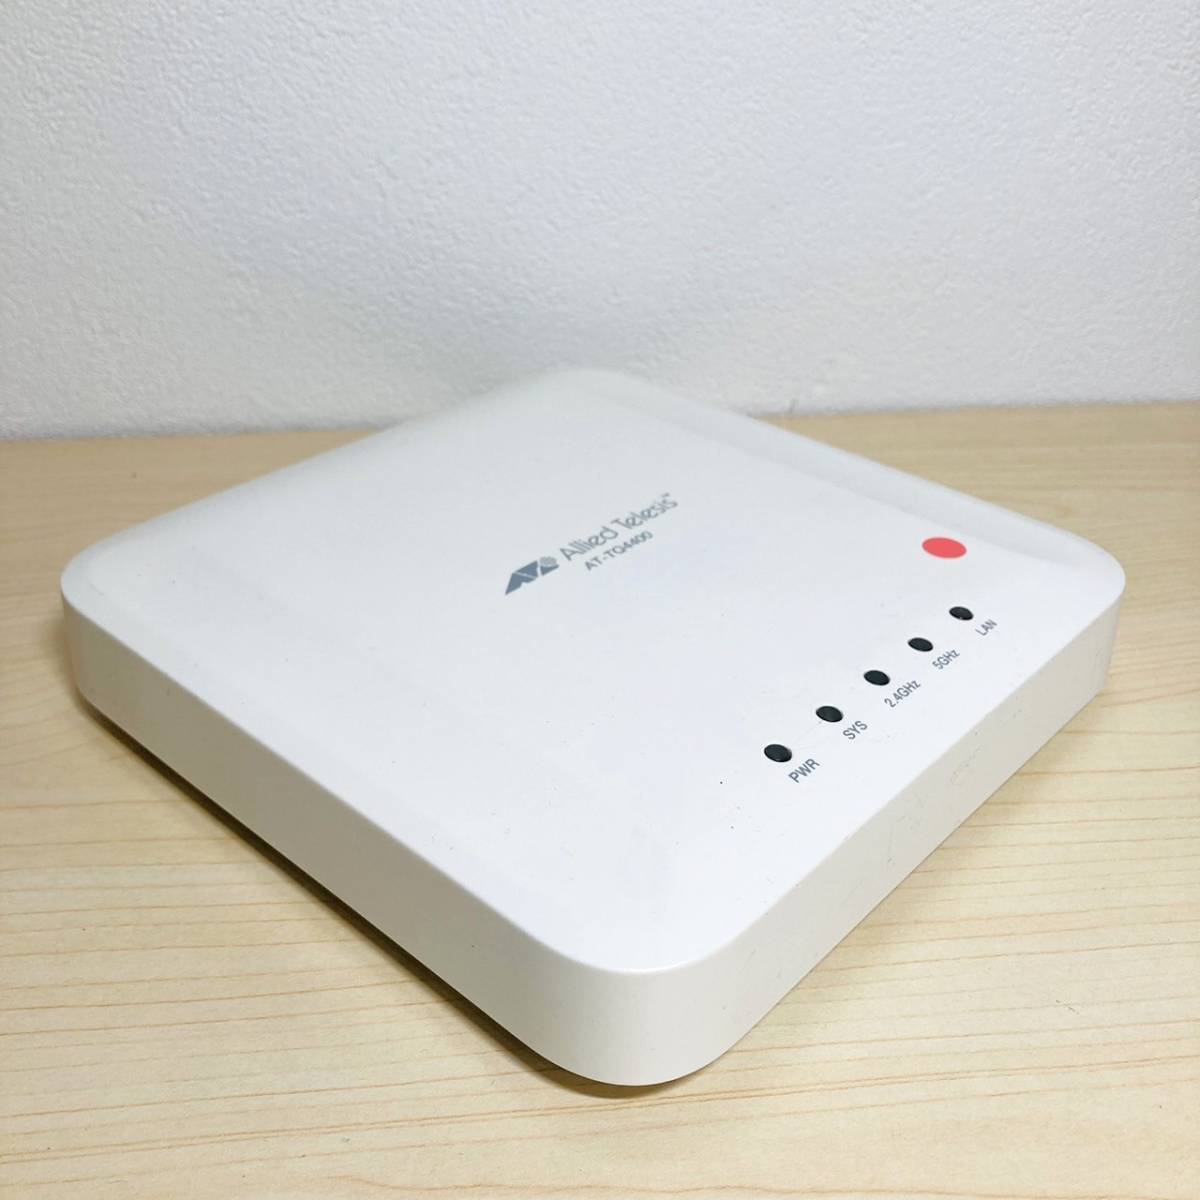 122【通電OK】 Allied Telesis AT-TQ4400 無線 LAN アクセスポイント AP ホワイト 白 Wi-Fi インターネット ルーター アライドテレシス_画像2